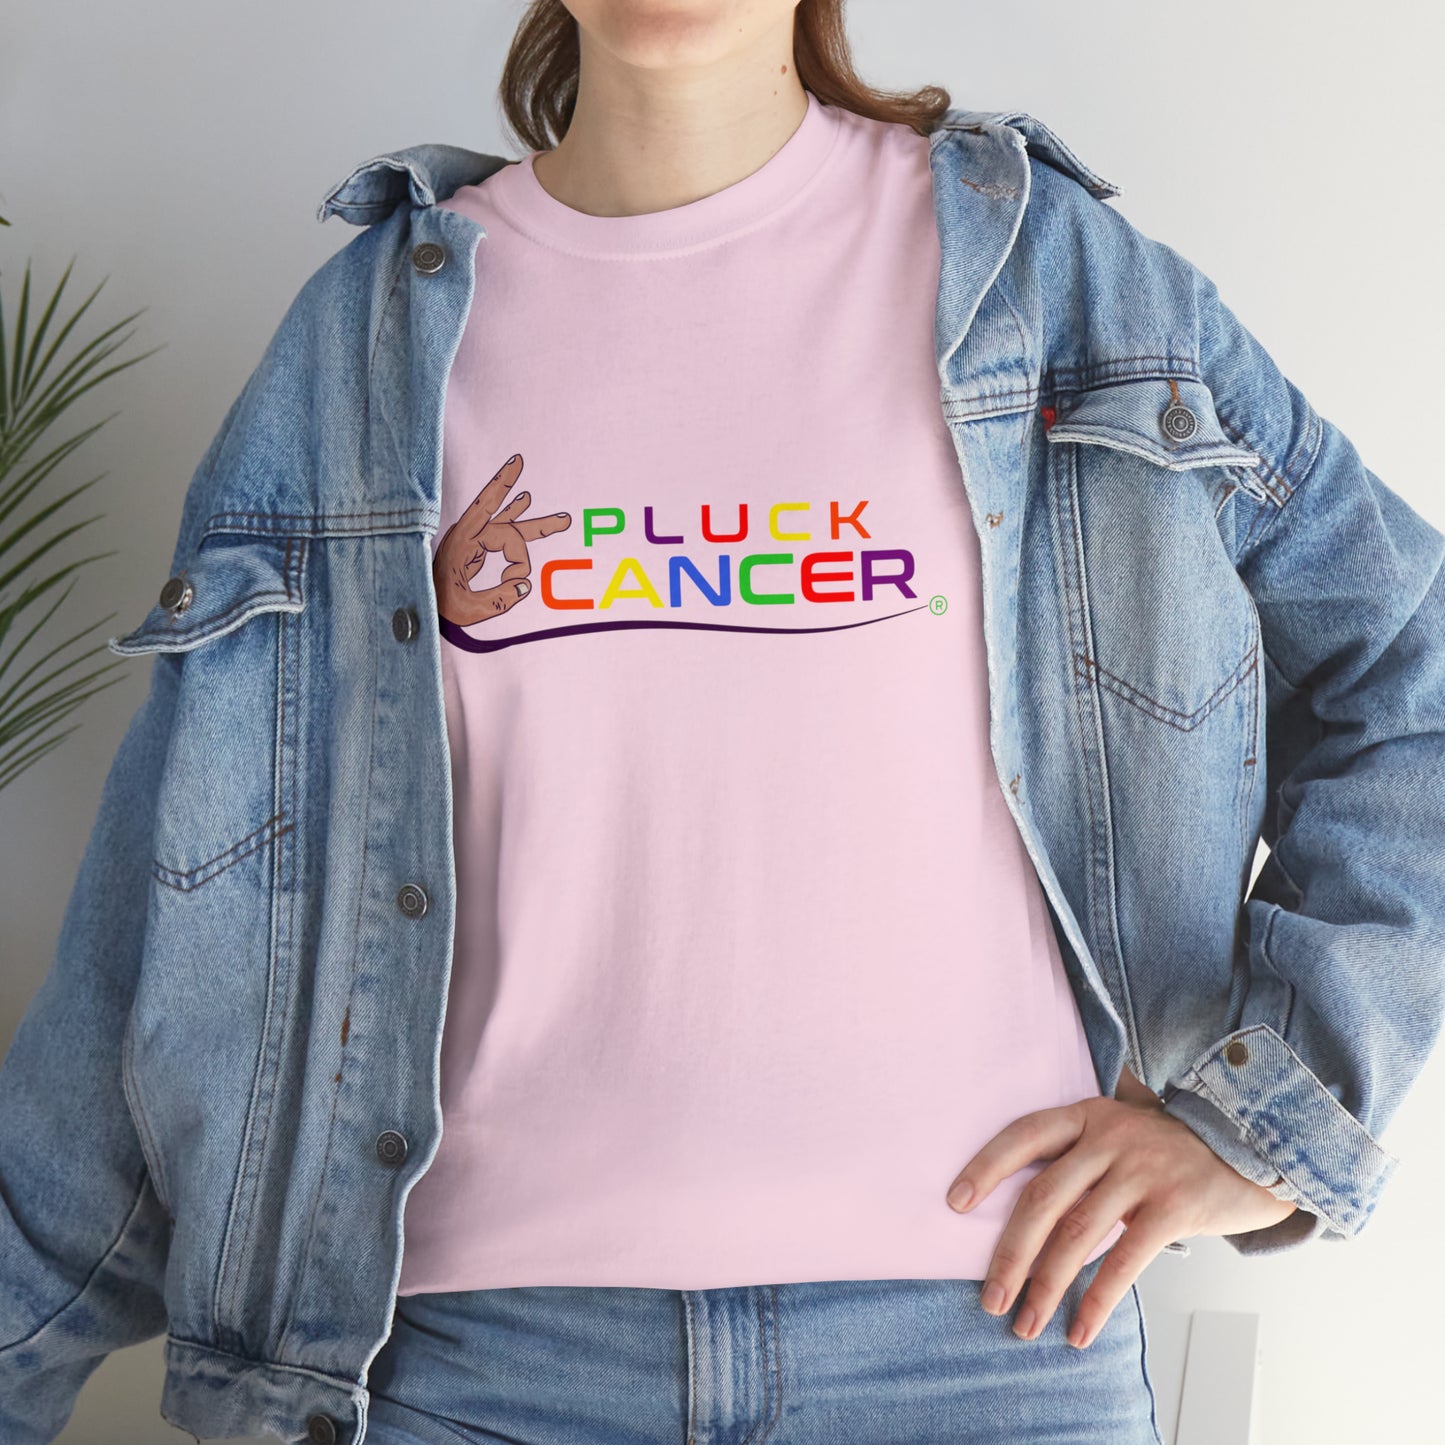 Pluck Cancer Women's Cotton T-Shirt - Light Pink